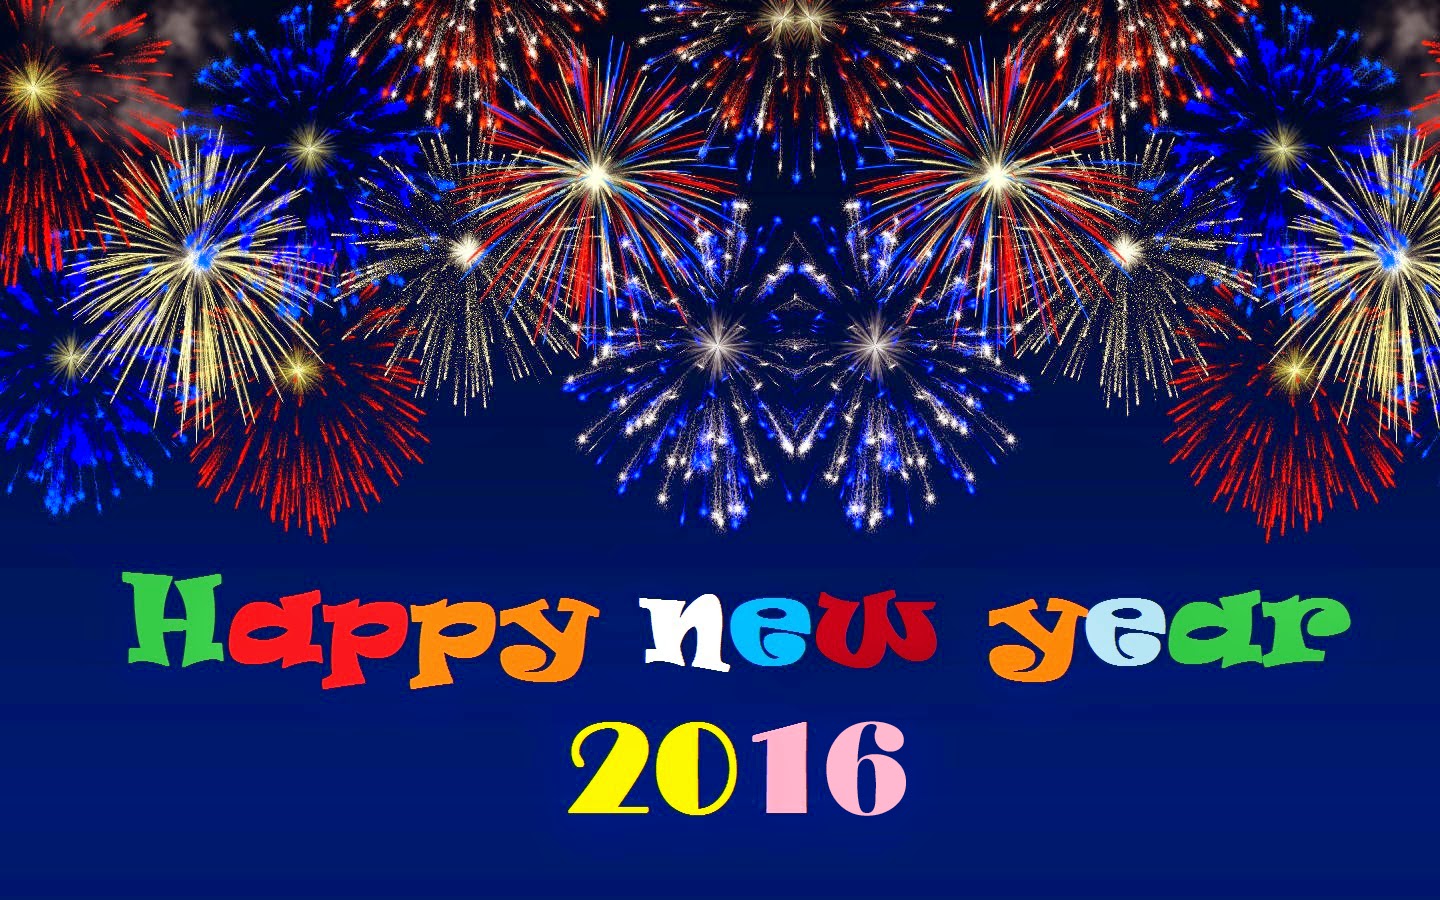 Chúc mừng năm mới 2016 của Dich vụ chuyển nhà trọn gói Toàn Cầu